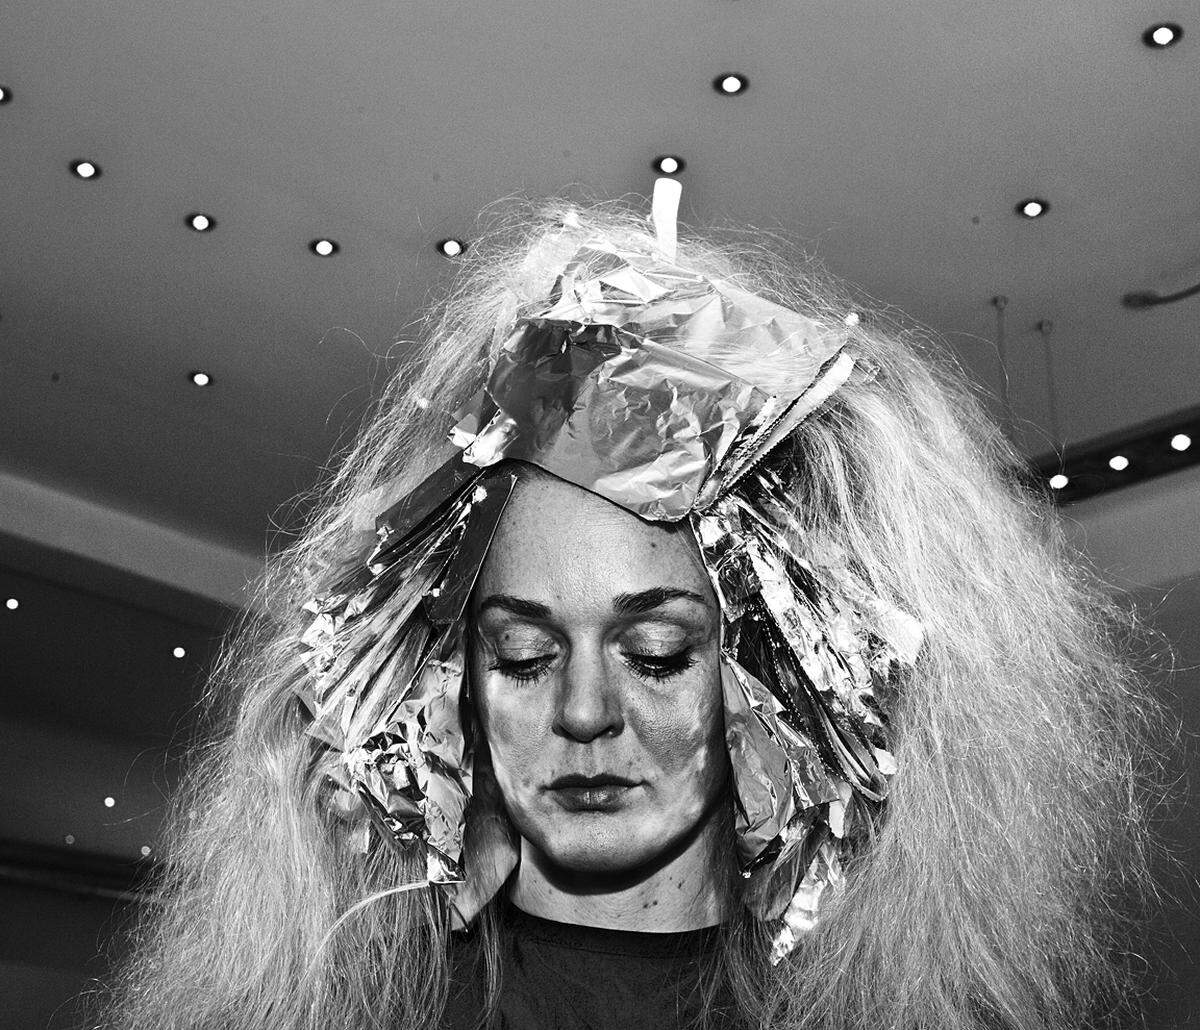 Jens Juul, Dänemark: "Haar 09".Haare sind ein intimer Teil eines Menschen mit symbolischem Wert: Schönheit, Erotik, Individualität, Männlichkeit oder Weiblichkeit. "Ich begann, Friseurläden aufzusuchen, um dort den Moment einzufangen, wenn Menschen diesen intimen Bereich - und damit die Art, wie wir von anderen wahrgenommen werden - formen zu lassen", erzählt der Fotograf. 